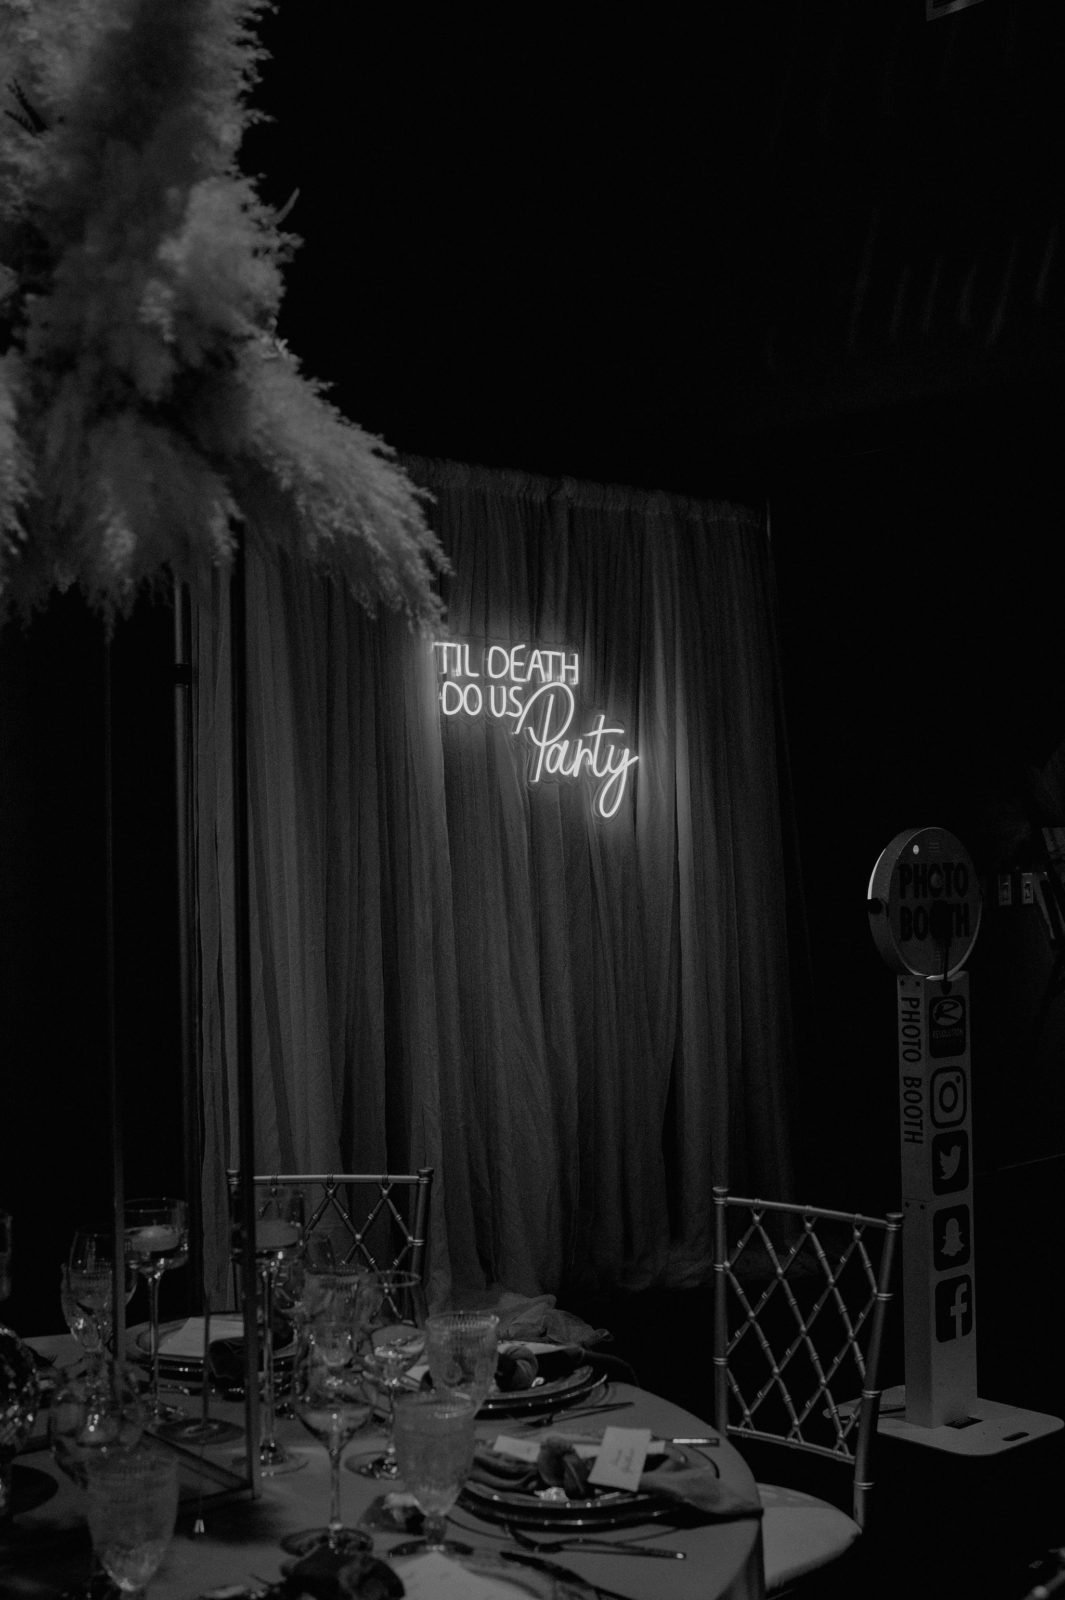 neon wedding signage, black and white wedding photography 